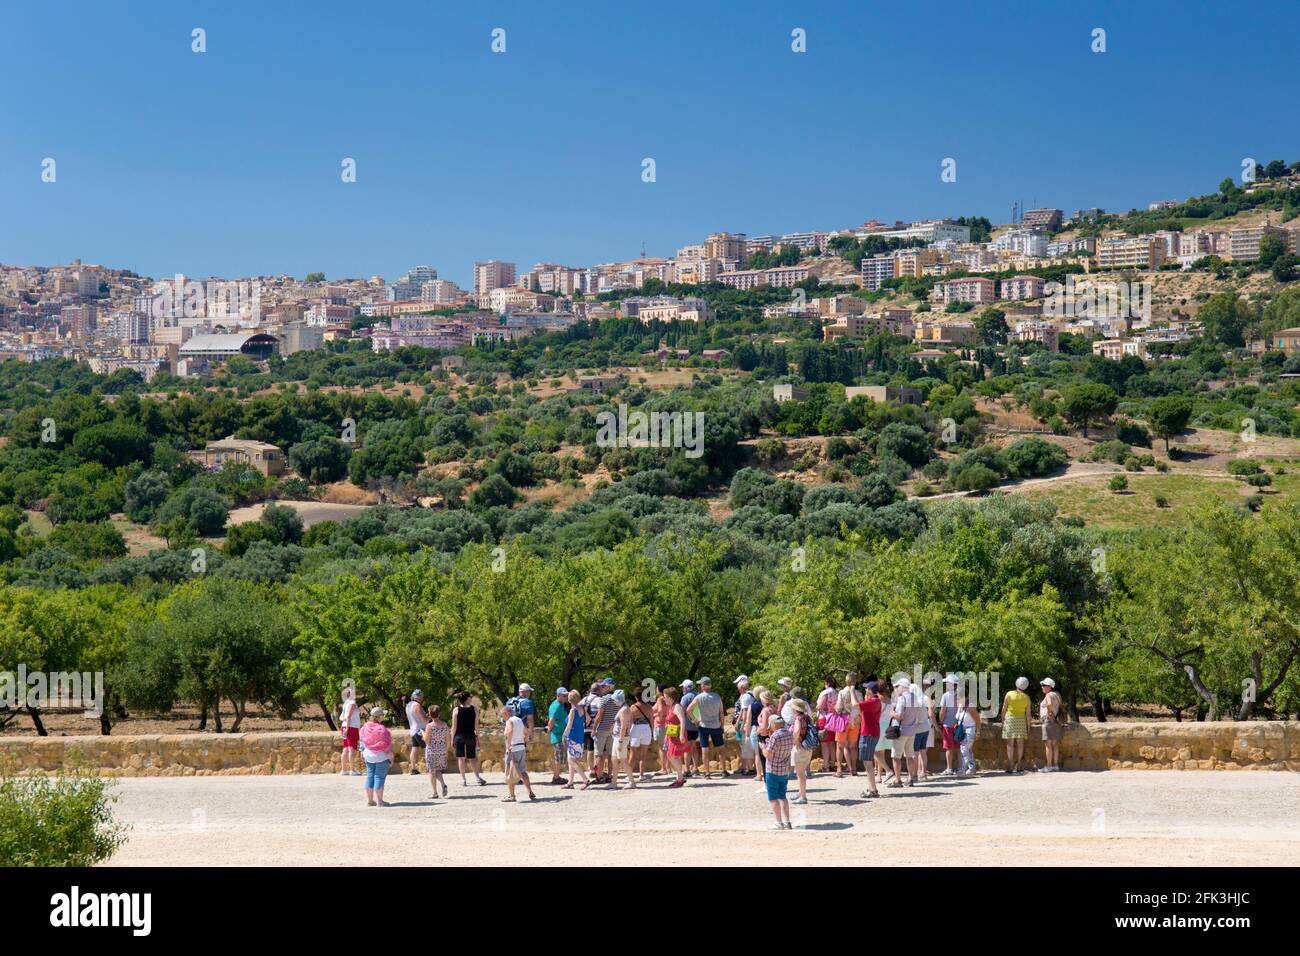 Agrigento, Sicilia, Italia. Turisti sulla Via Sacra guardando verso la città attraverso il paesaggio di ulivi e mandorli, Valle dei Templi. Foto Stock